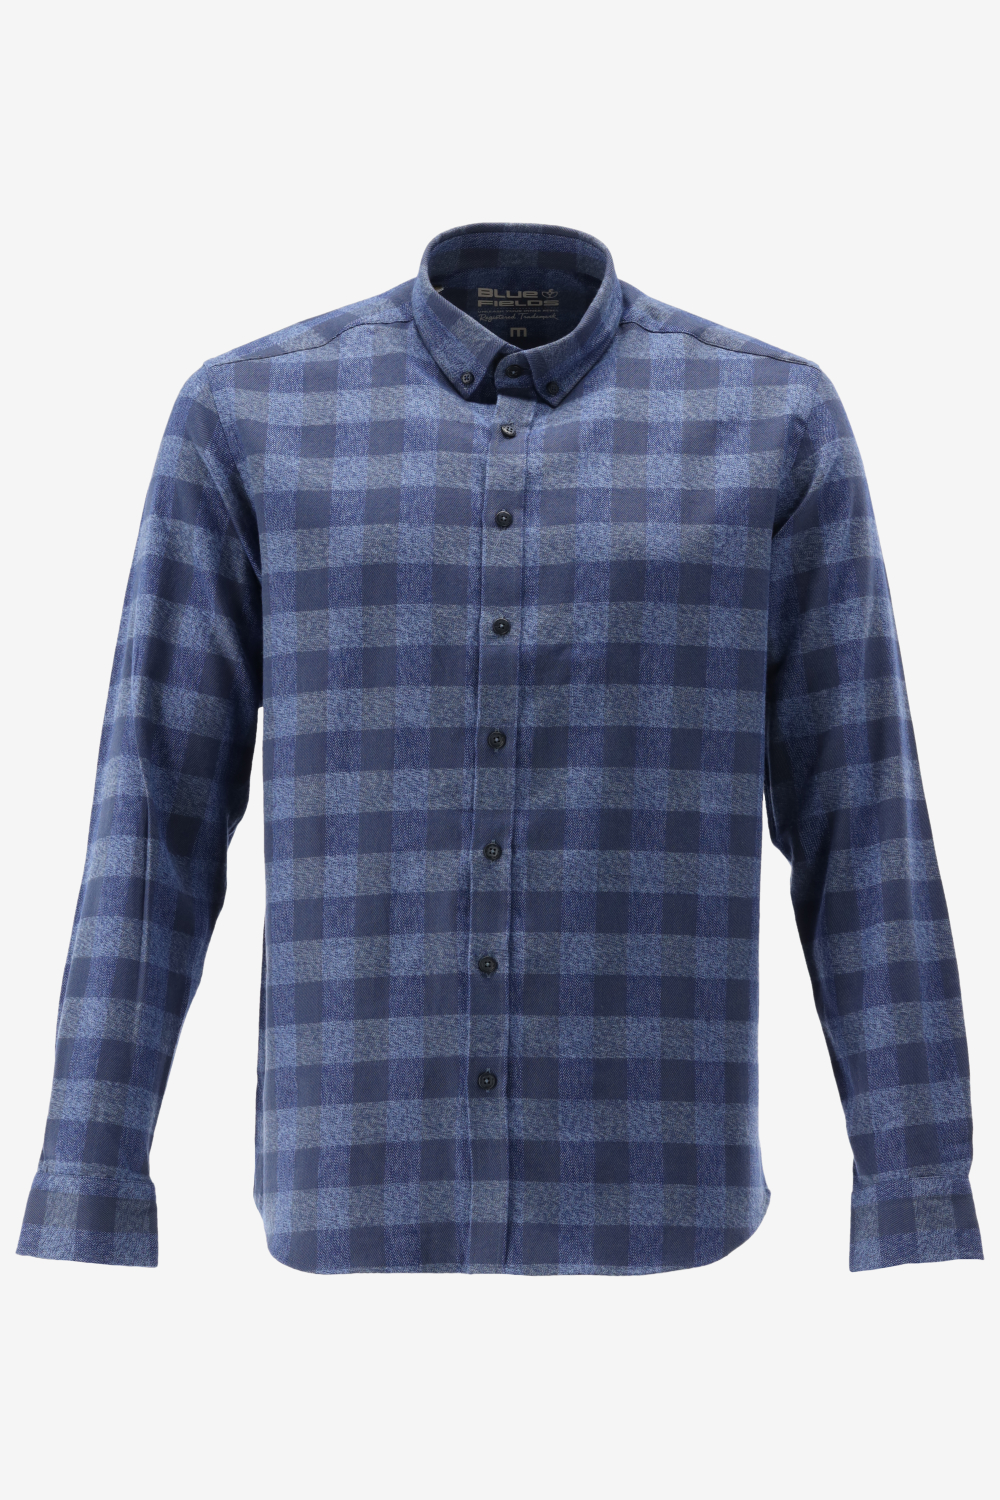 BlueFields Overhemd Shirt Ls Checked 21542018 5957 Mannen Maat - XL